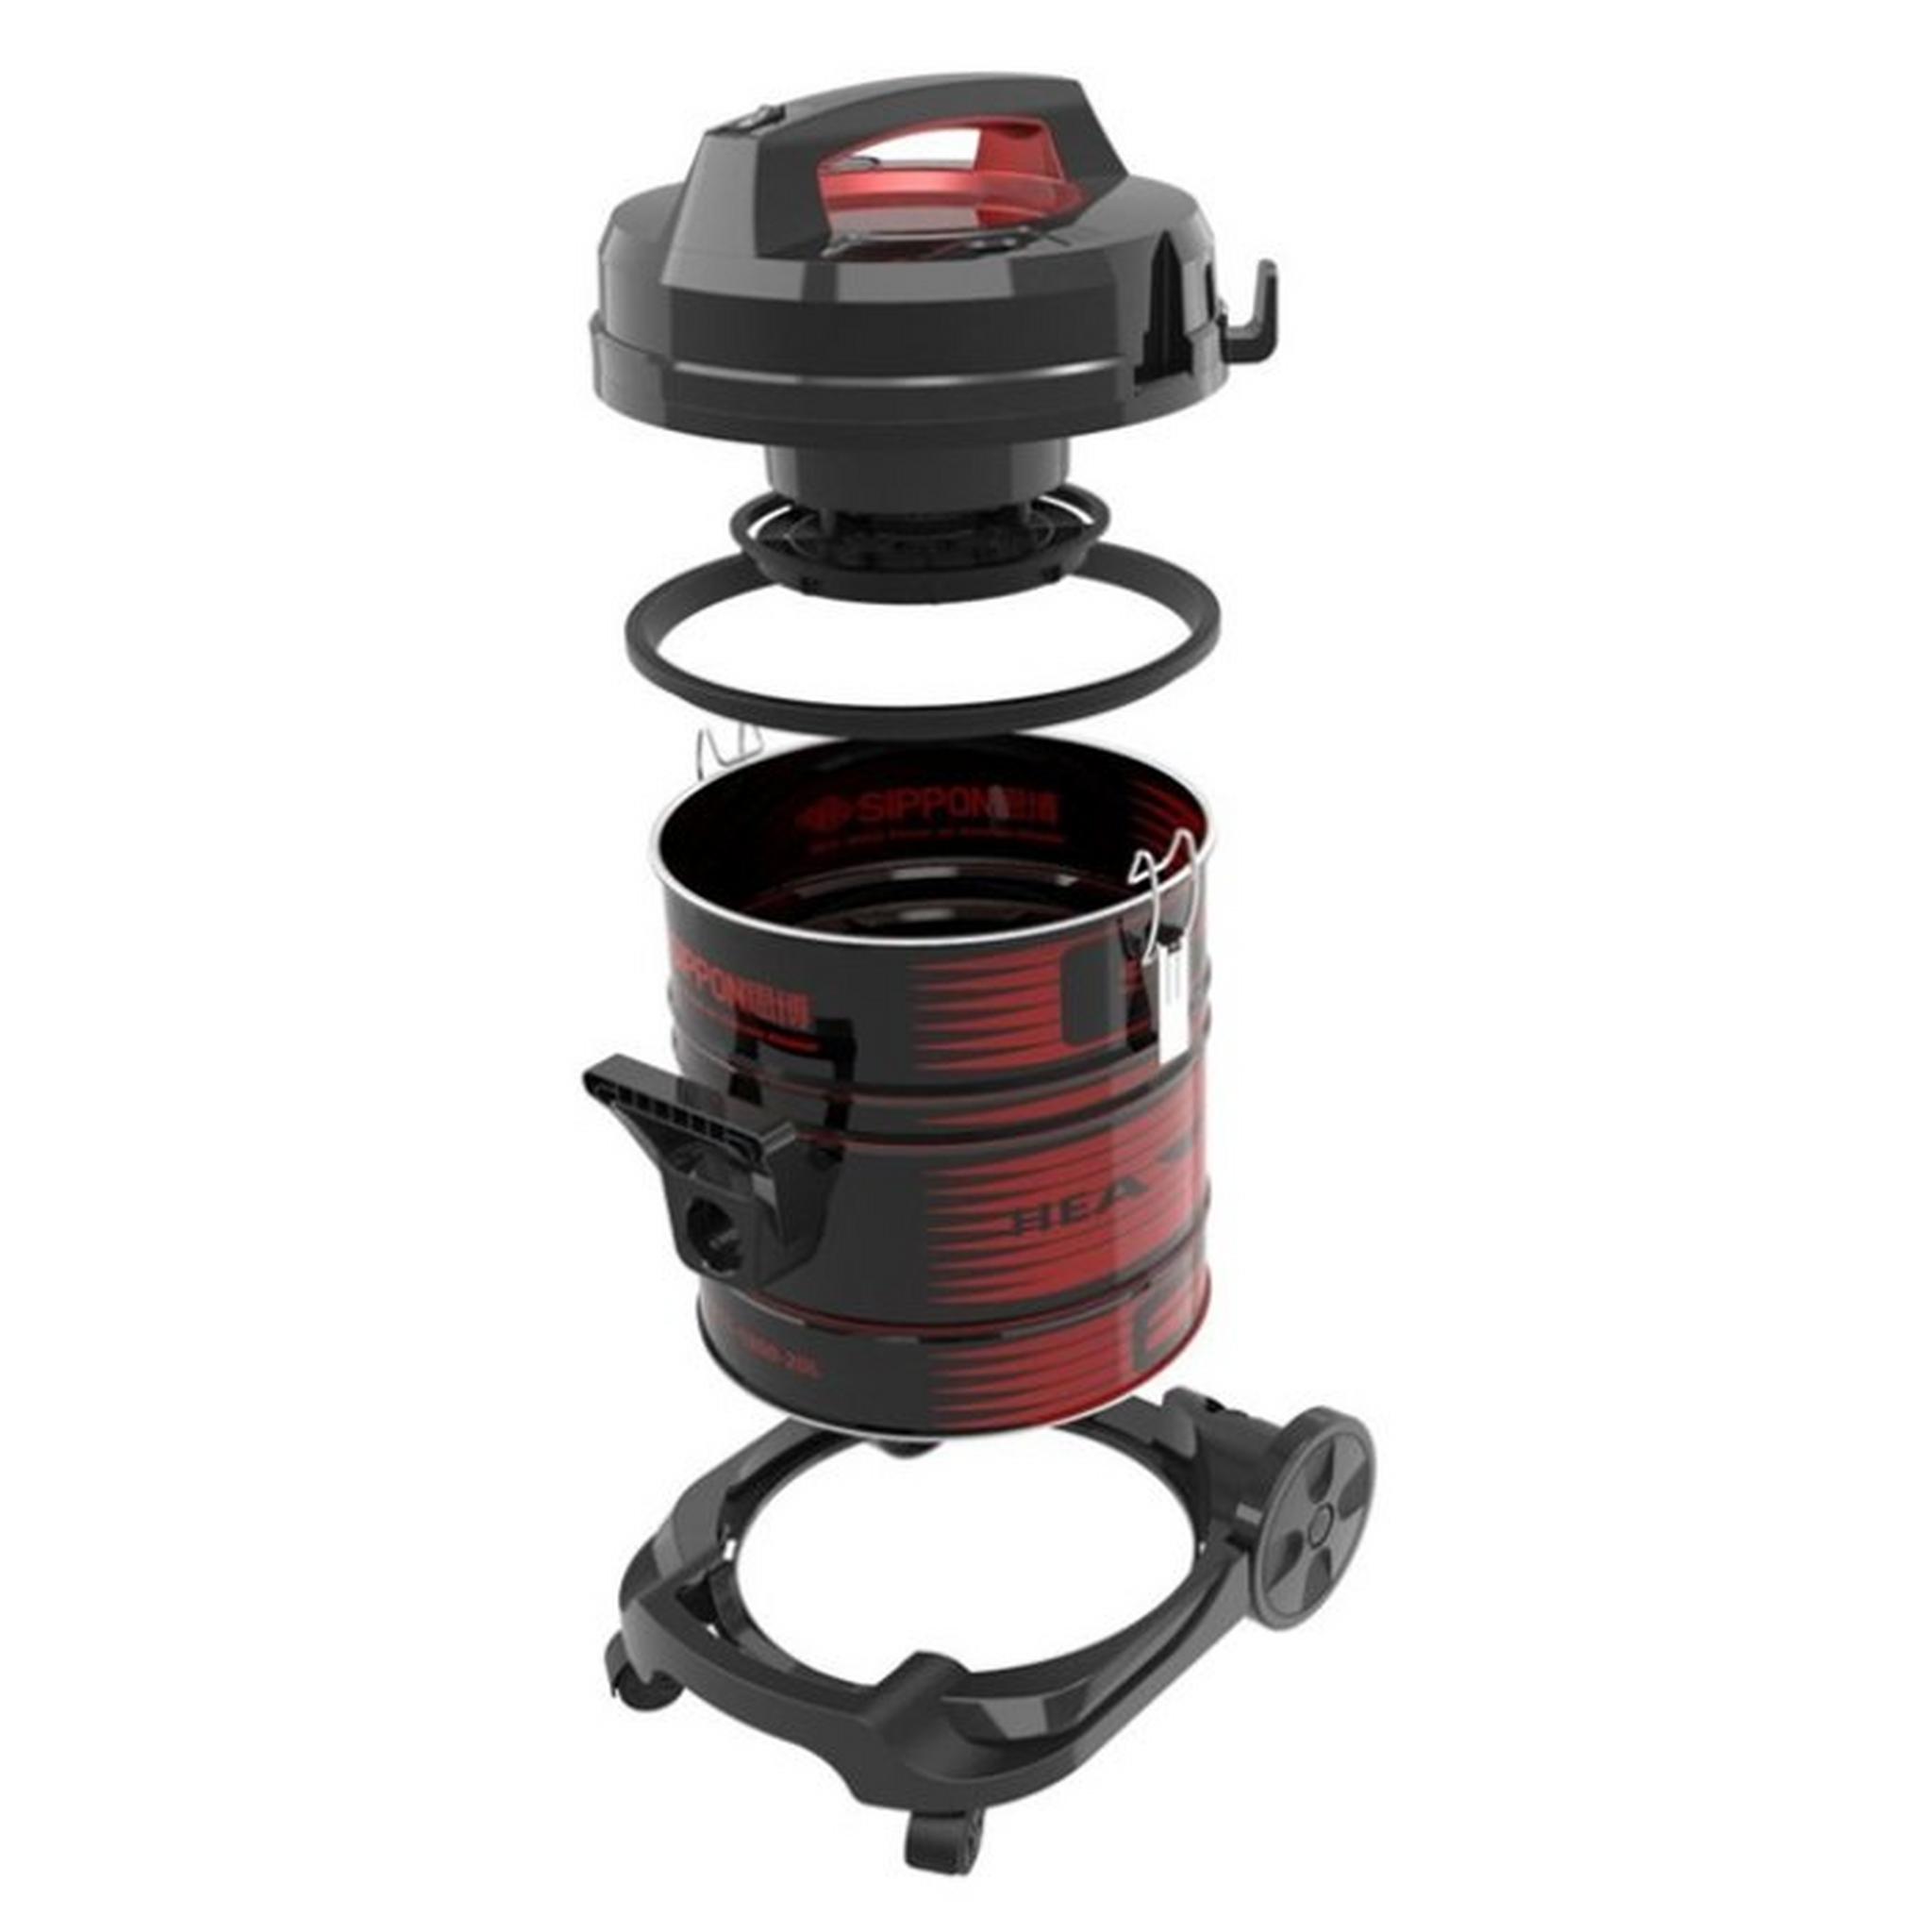 Frigidaire Drum Vacuum Cleaner, 2000W, 20 Liters, FD-DV9408 - Black